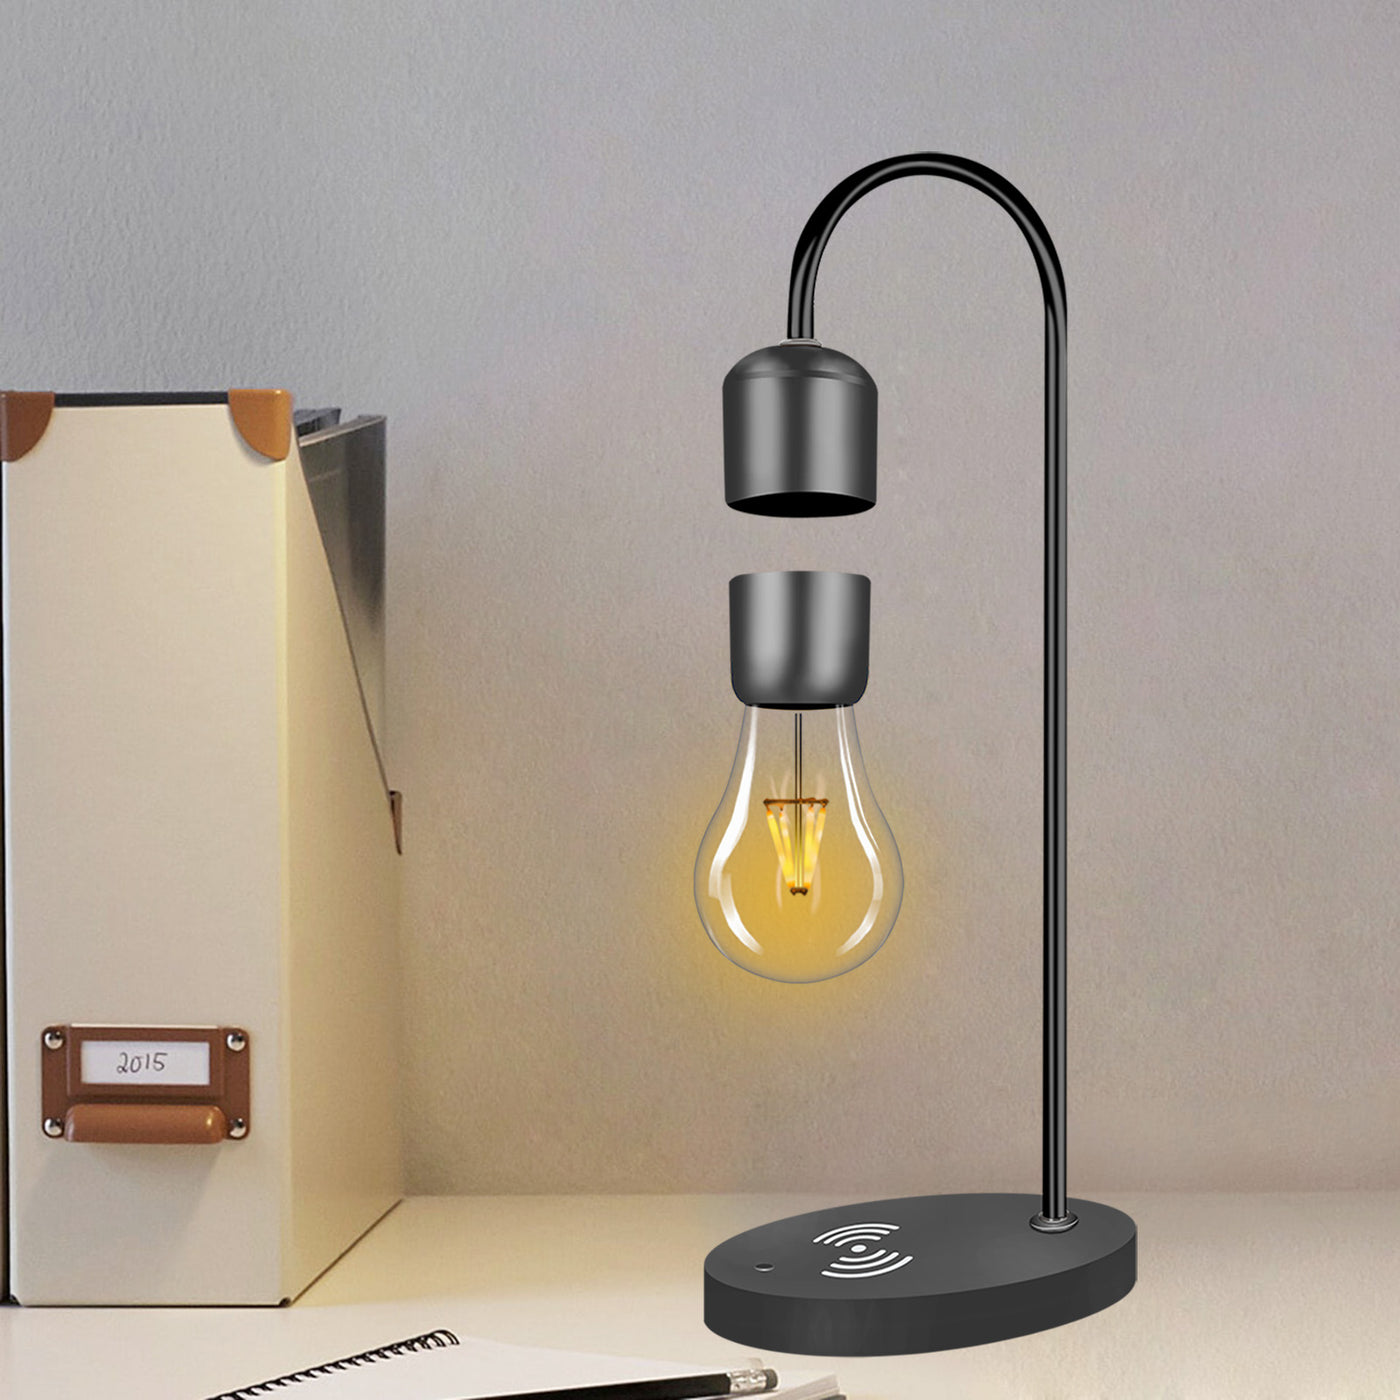 LANGTU Tisch-Schreibtisch-Smart-Lampe mit magnetschwebender, schwebender, kabelloser LED-Glühbirne und kabellosem Ladegerät, runder Sockel, schwarz